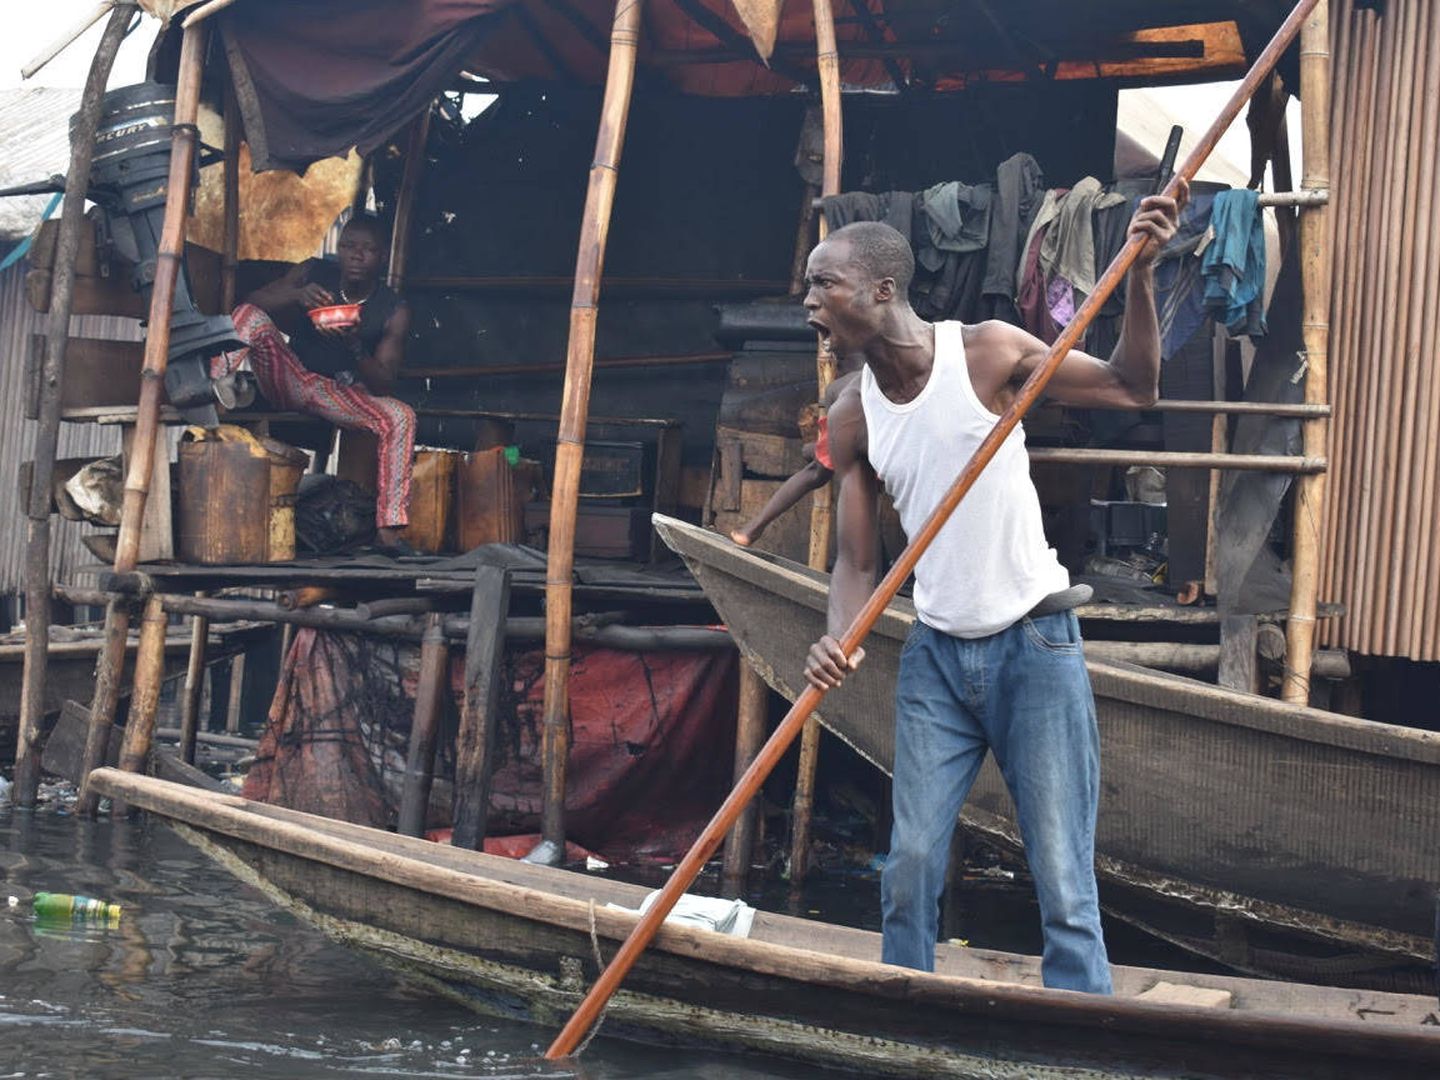 El hombre furioso por la llegada de europeos a Makoko. (Michelle Delgado Van Demen)